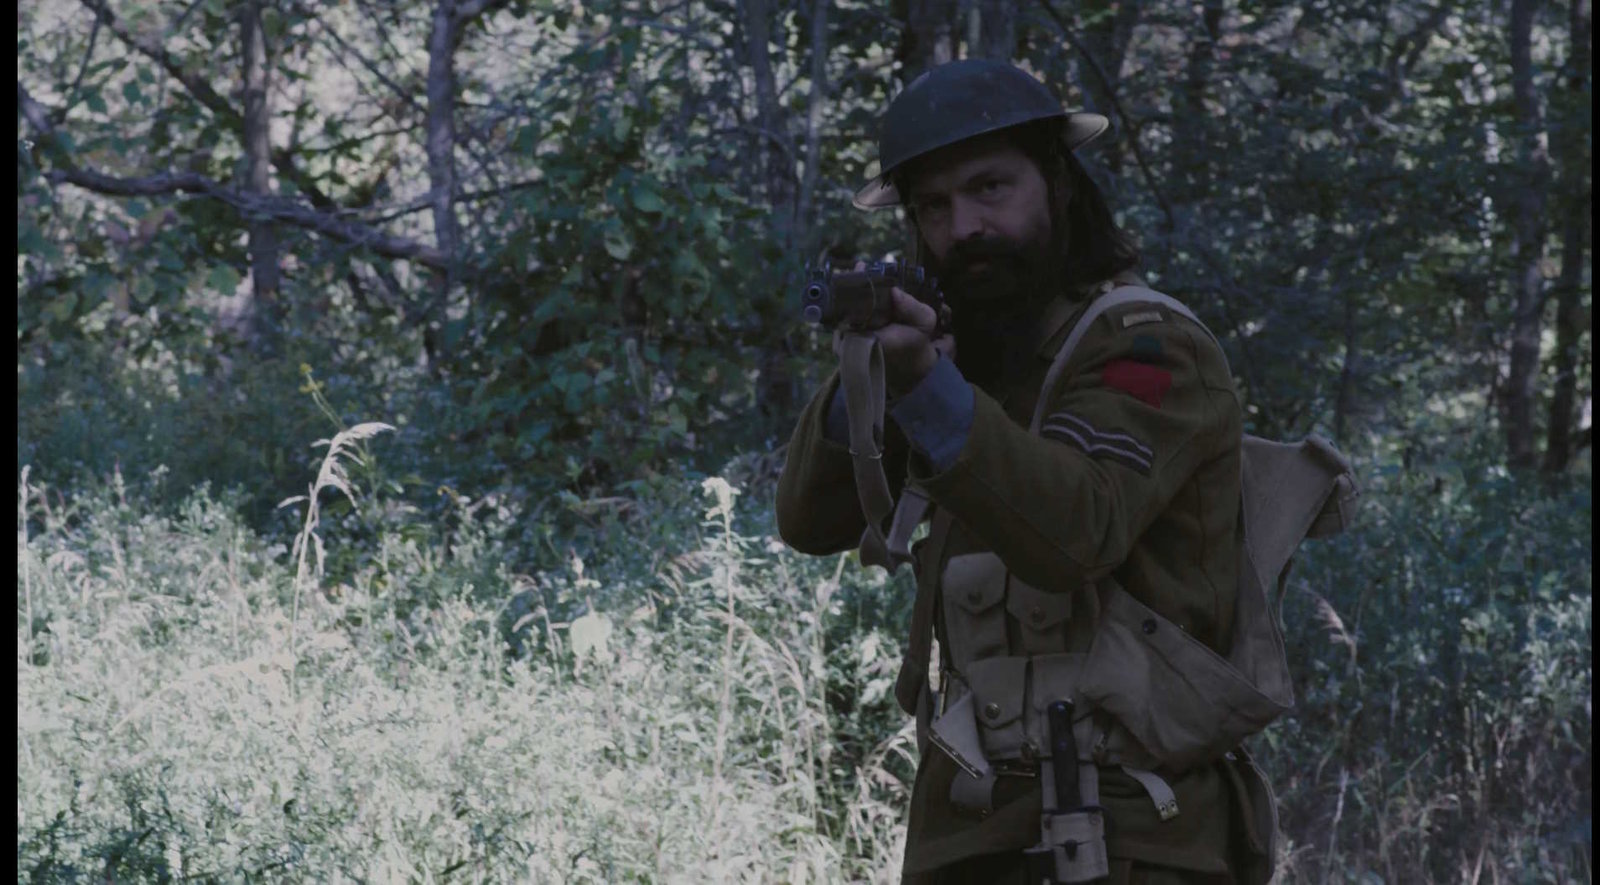 Sniper - Duell an der Westfront  (DVD)